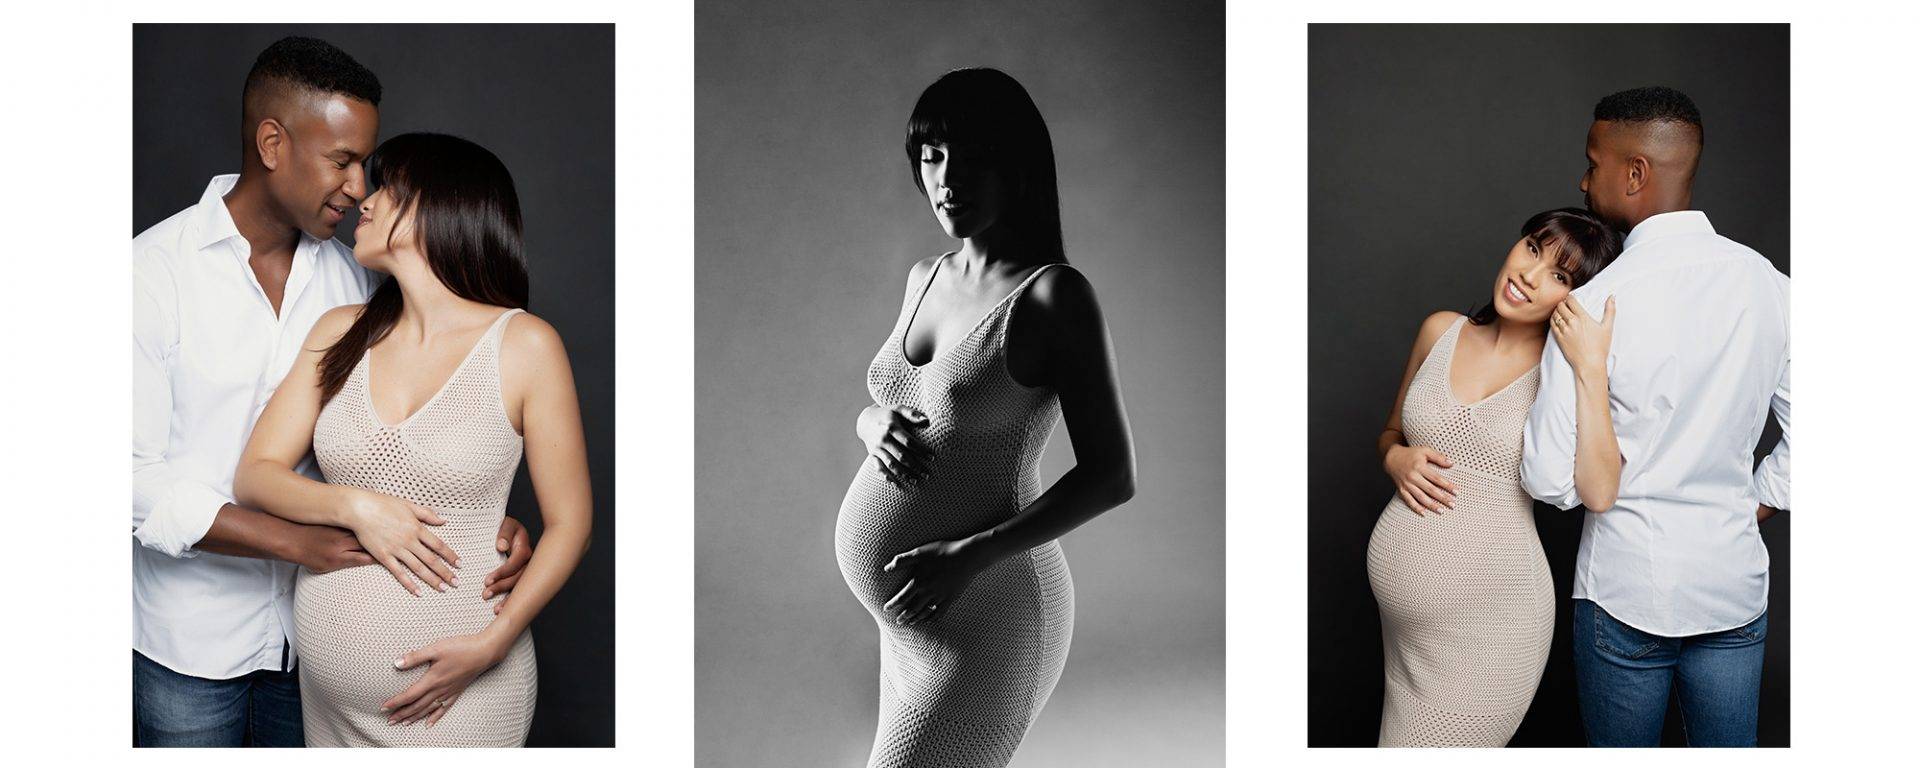 Couple maternity photos in studio.